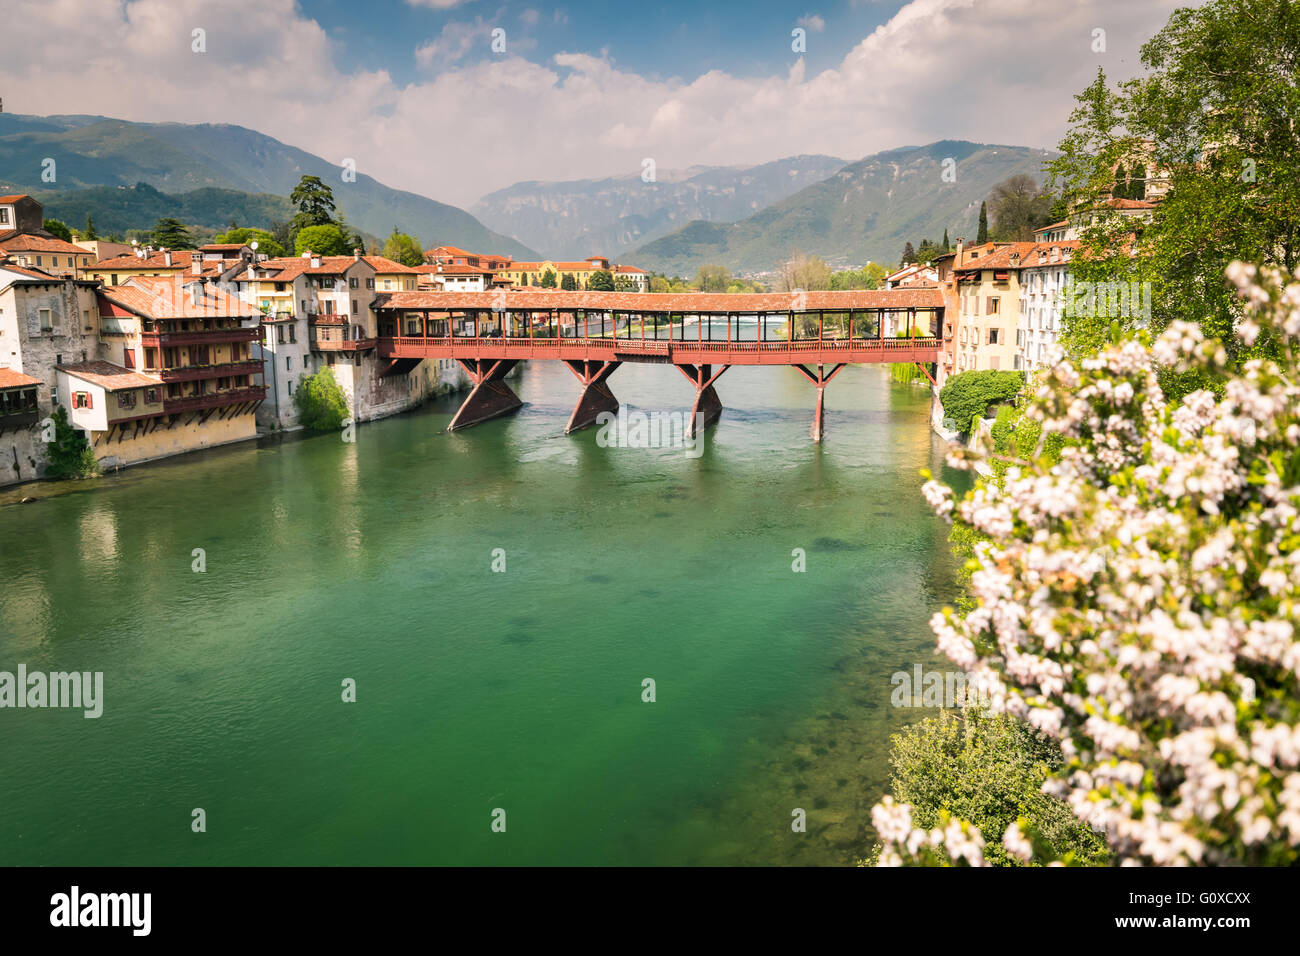 The Old Bridge also called the Bassano Bridge or Bridge of the Alpini, located in the city of Bassano del Grappa. Stock Photo